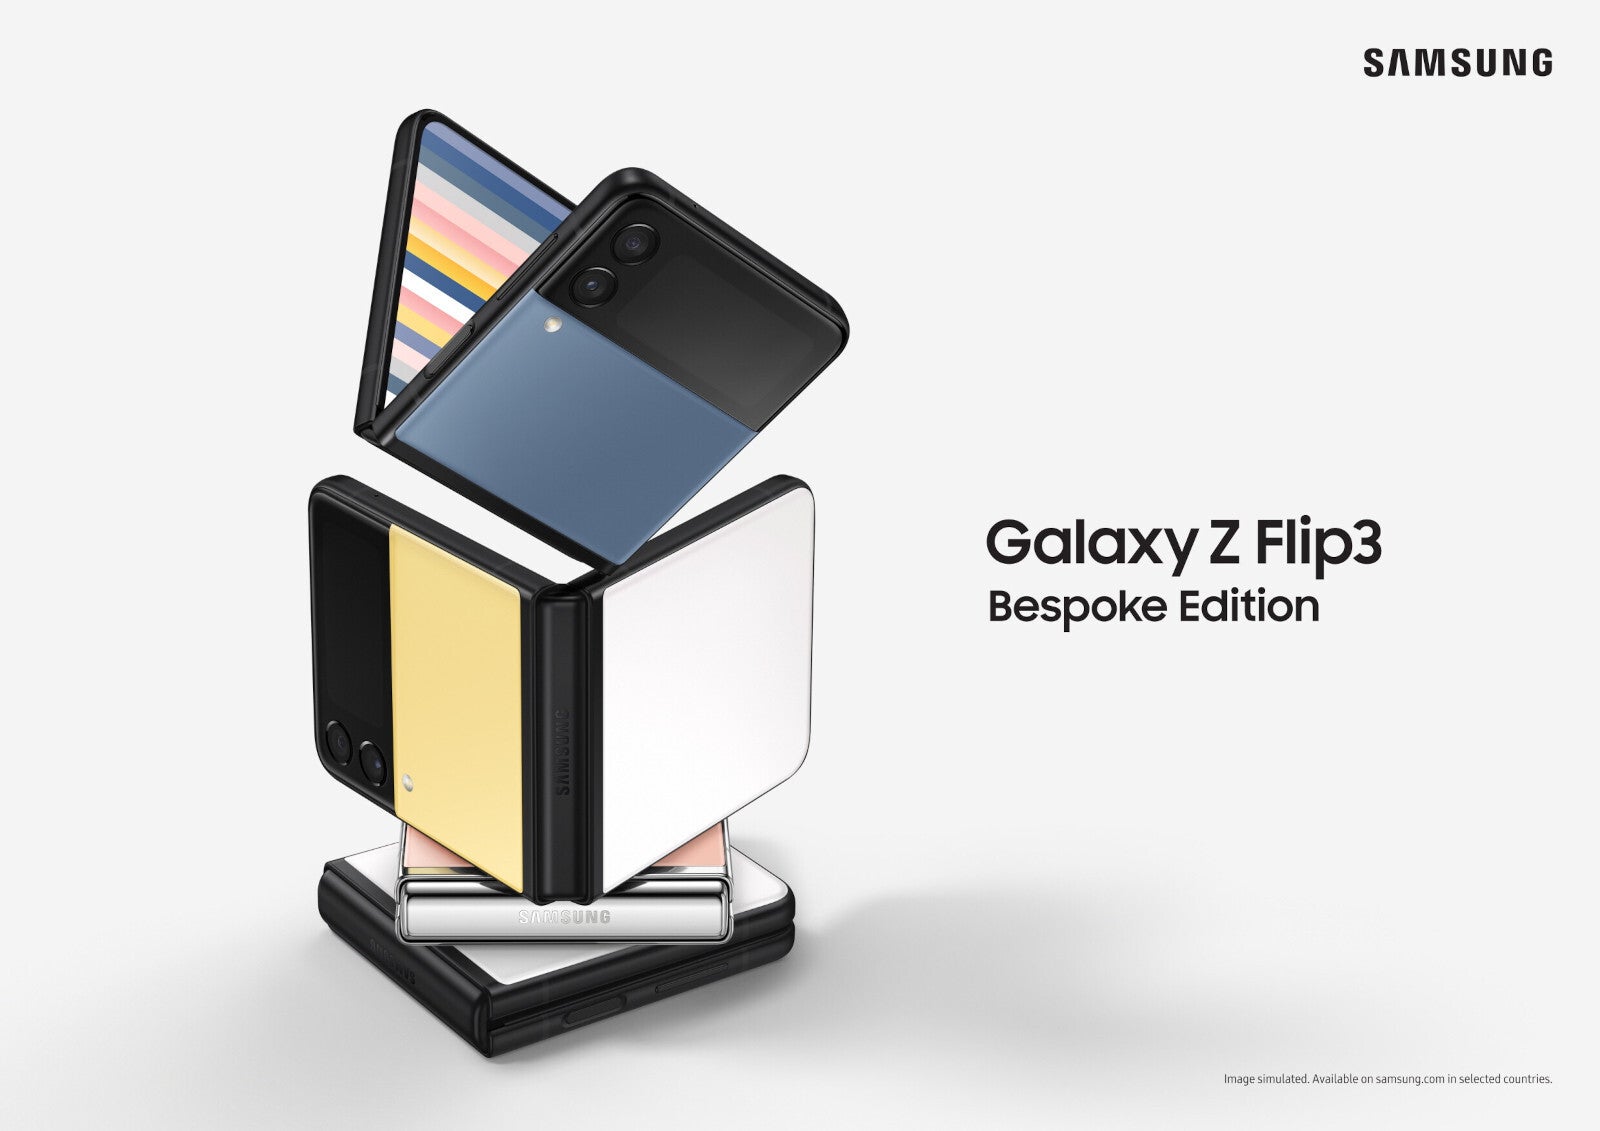 Edição Z Flip 3 Bespoke, rumores dizem que o Z Flip 4 Bespoke vai arrasar com mais cores e combos de cores - a edição Galaxy Z Flip 4 Bespoke pode vir com ainda mais opções de cores e para mais países (dica)